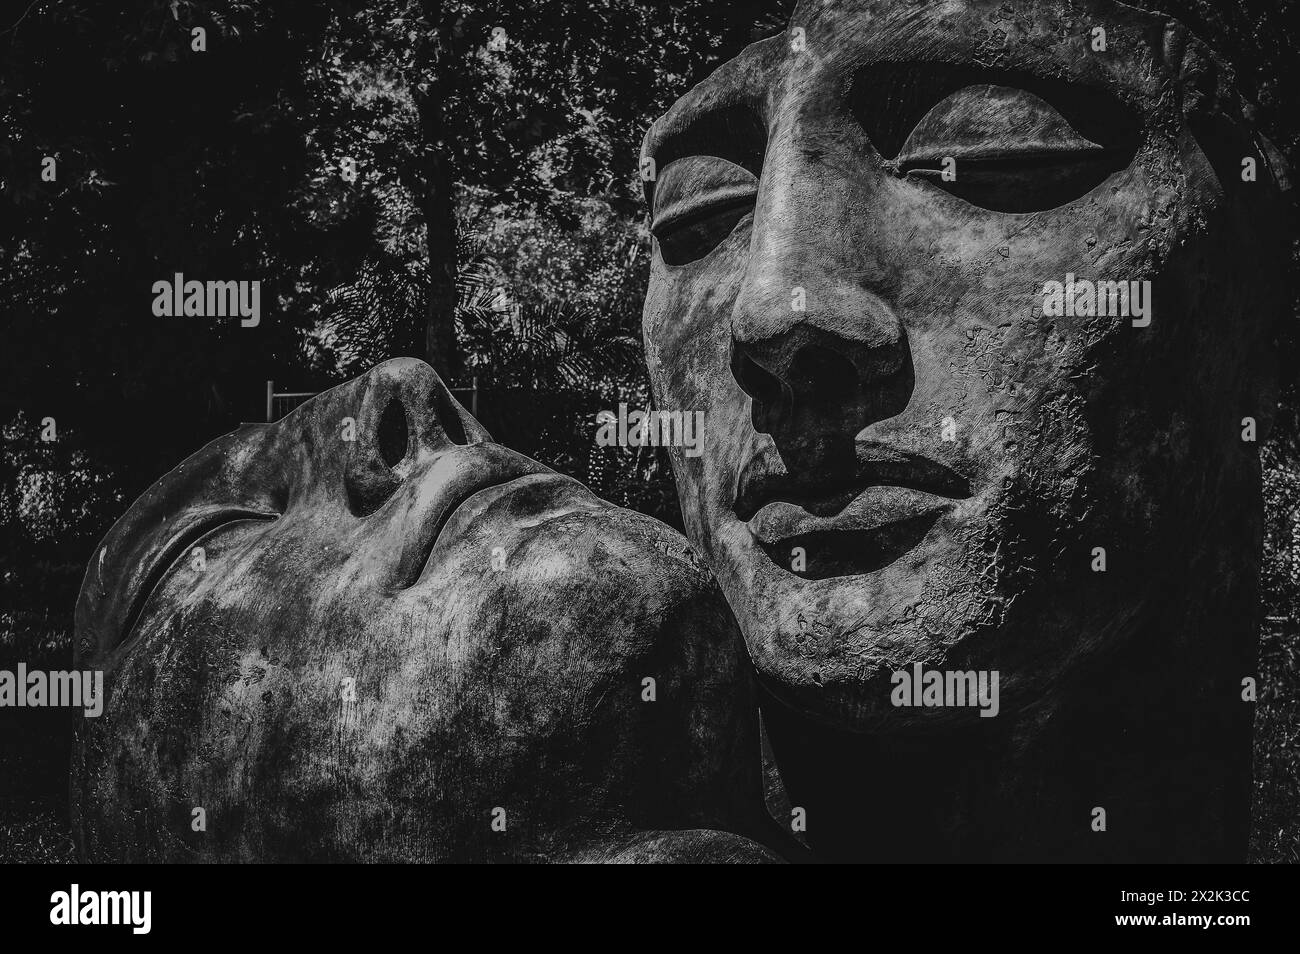 Questa immagine in bianco e nero cattura una grande scultura testurizzata del volto di un uomo disteso su un lato, adagiato su uno sfondo naturale di alberi. Foto Stock